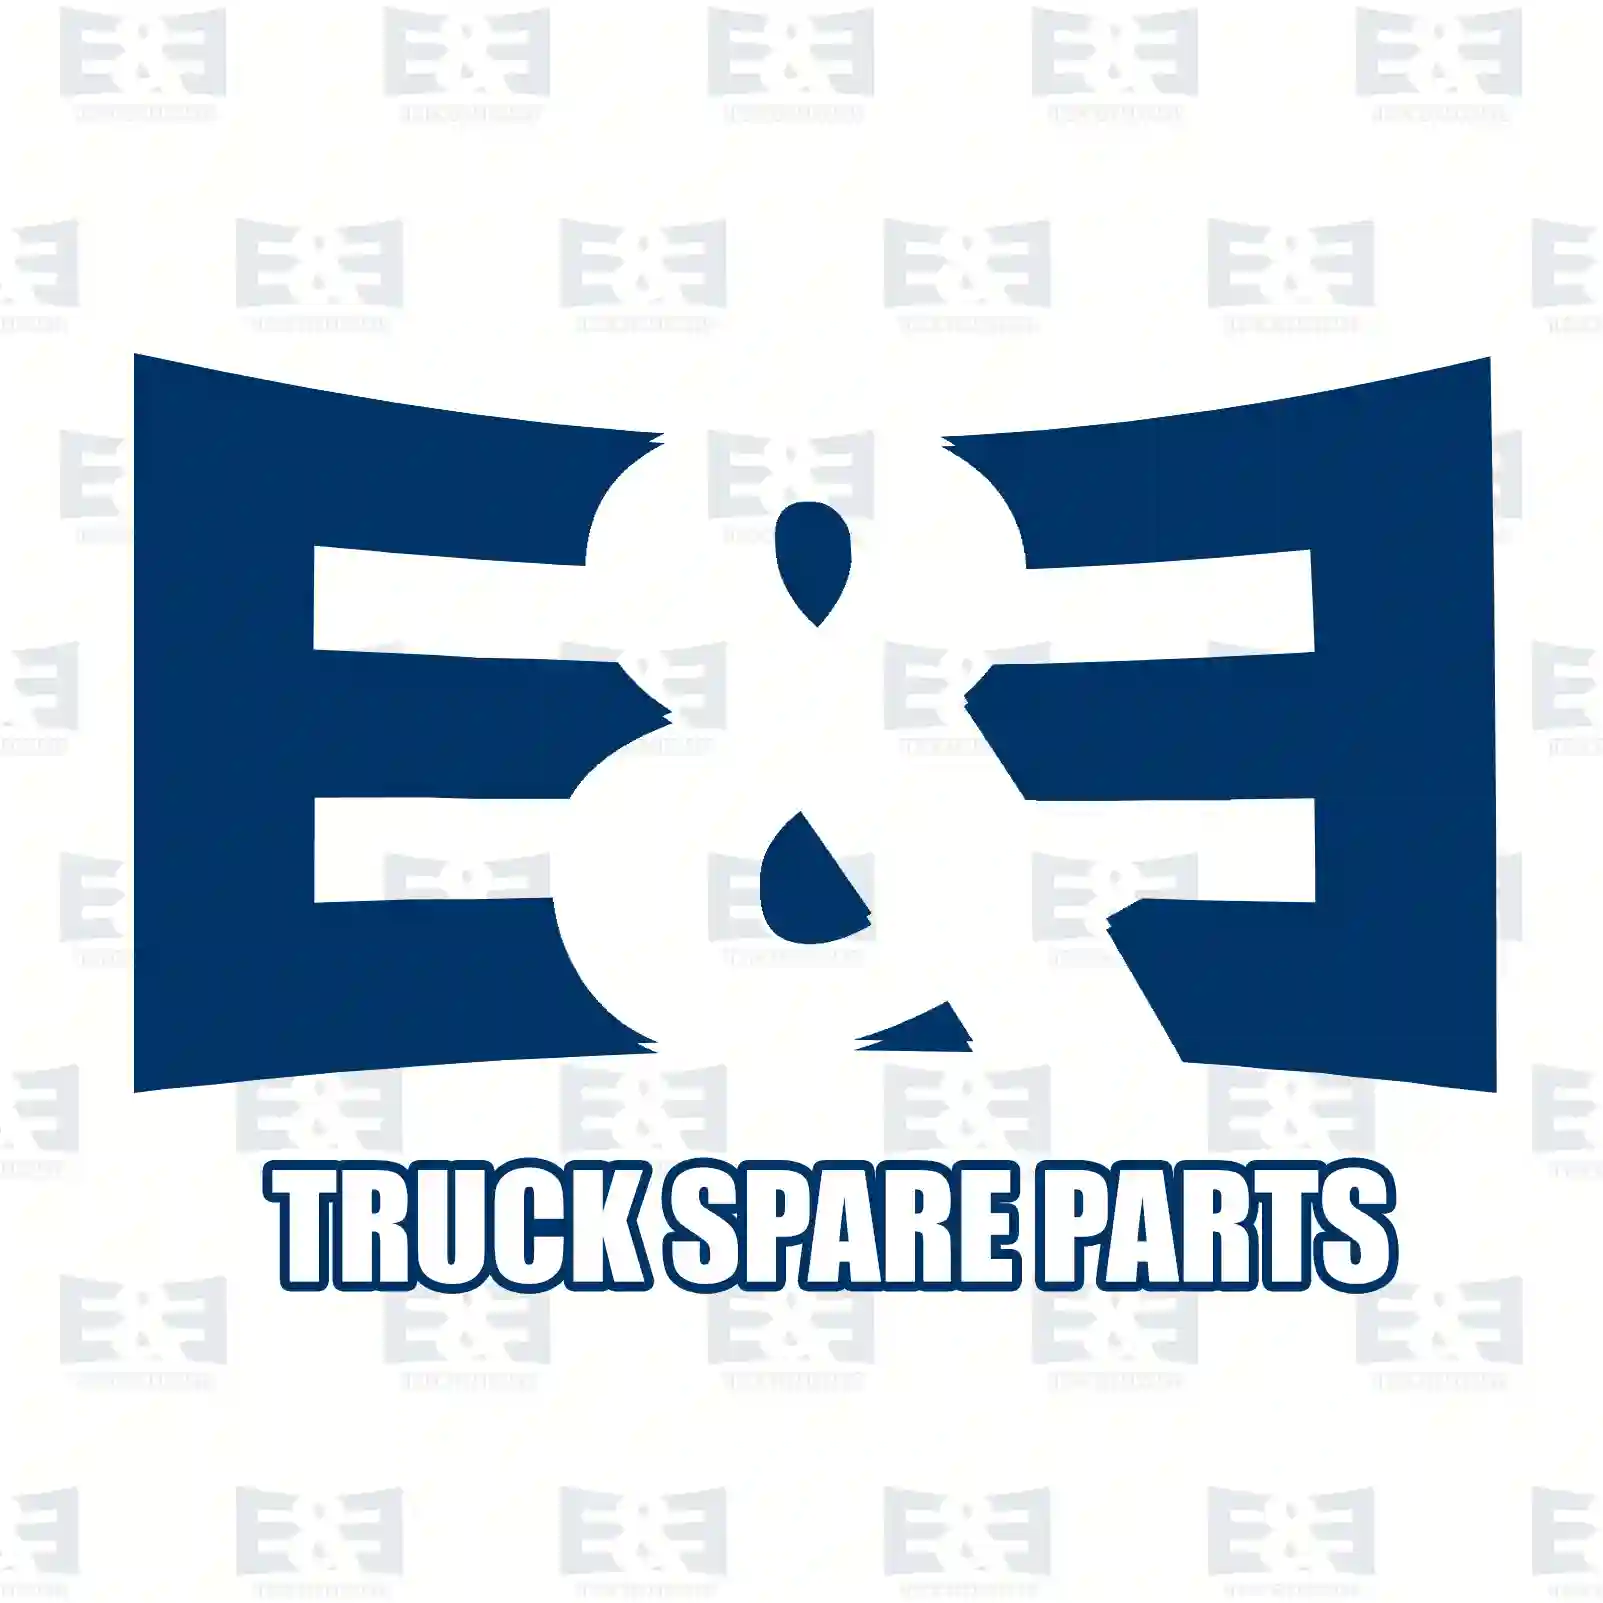 Level valve, 2E2283227, 0003282525, ZG50991-0008 ||  2E2283227 E&E Truck Spare Parts | Truck Spare Parts, Auotomotive Spare Parts Level valve, 2E2283227, 0003282525, ZG50991-0008 ||  2E2283227 E&E Truck Spare Parts | Truck Spare Parts, Auotomotive Spare Parts